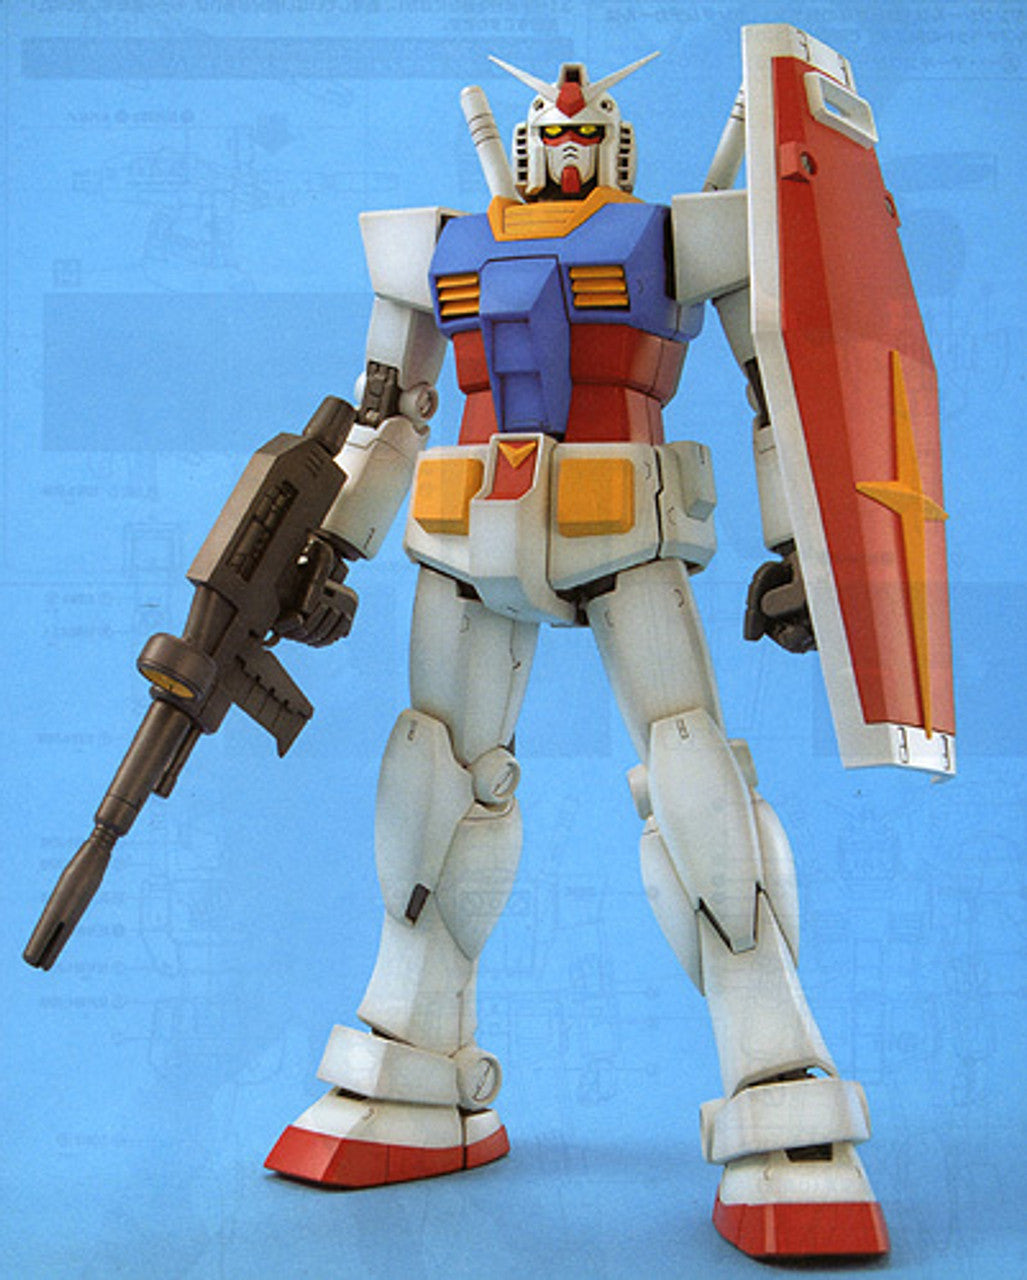 Bandai Master Grade (MG) RX-78-2 Gundam Ver.2.0 E.F.S.F Prototype Close-Combat Mobile Suit 1:100 Scale